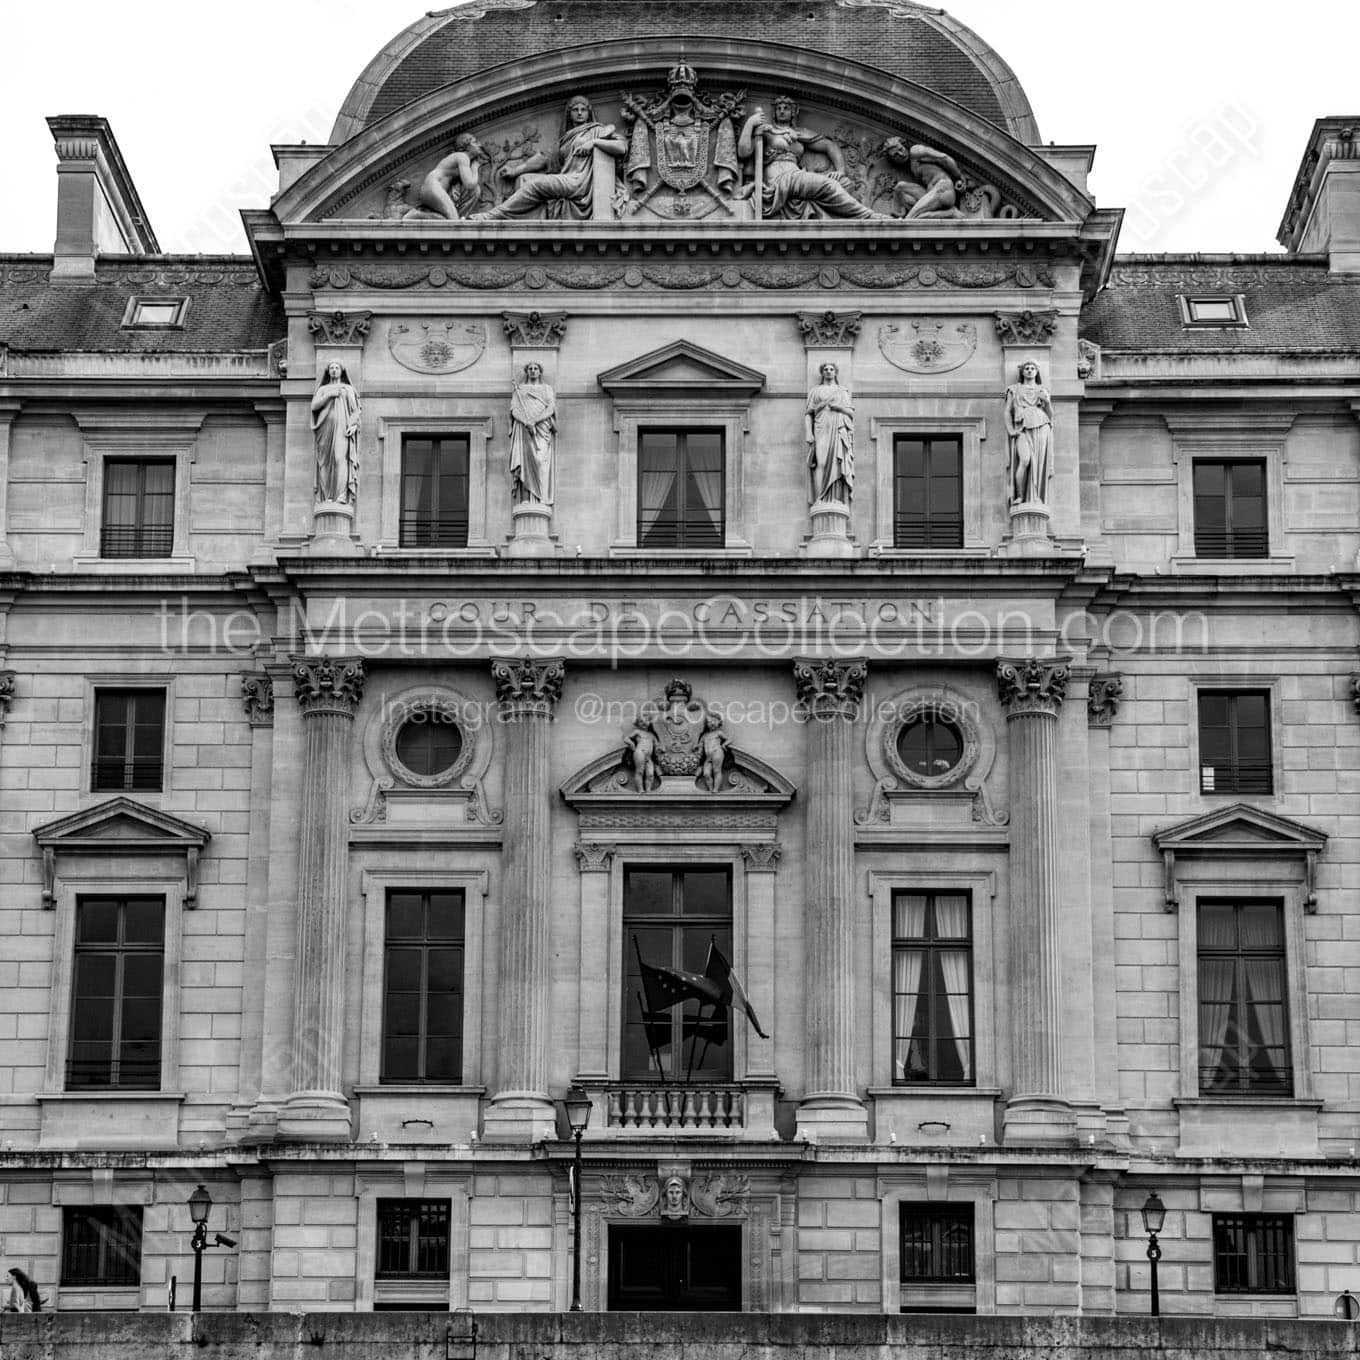 cour de cassation french supreme court building Black & White Wall Art